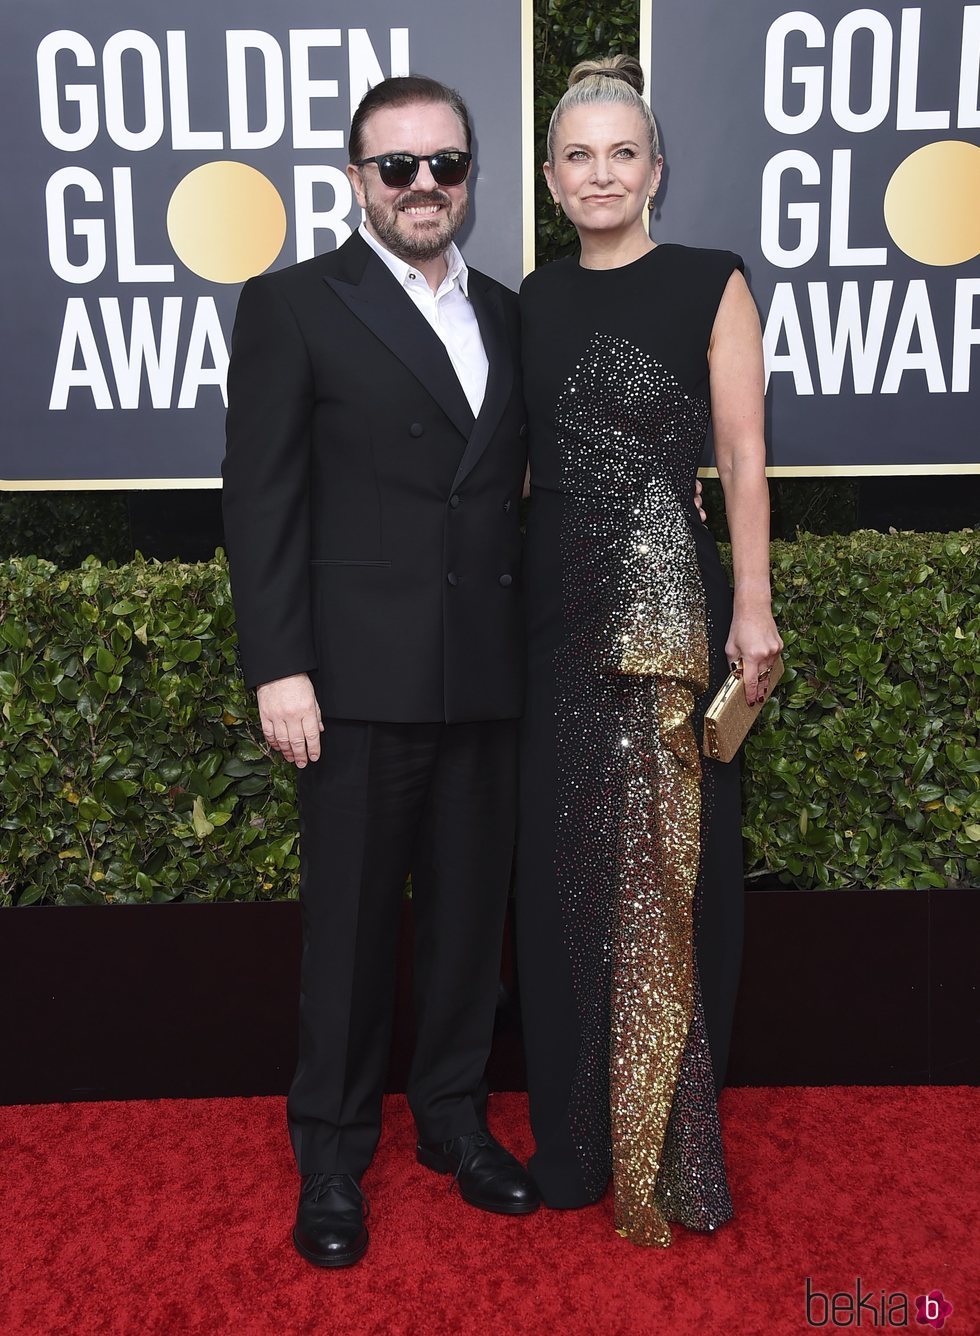 Ricky Gervais y Jane Fallon en la alfombra roja de los Globos de Oro 2020